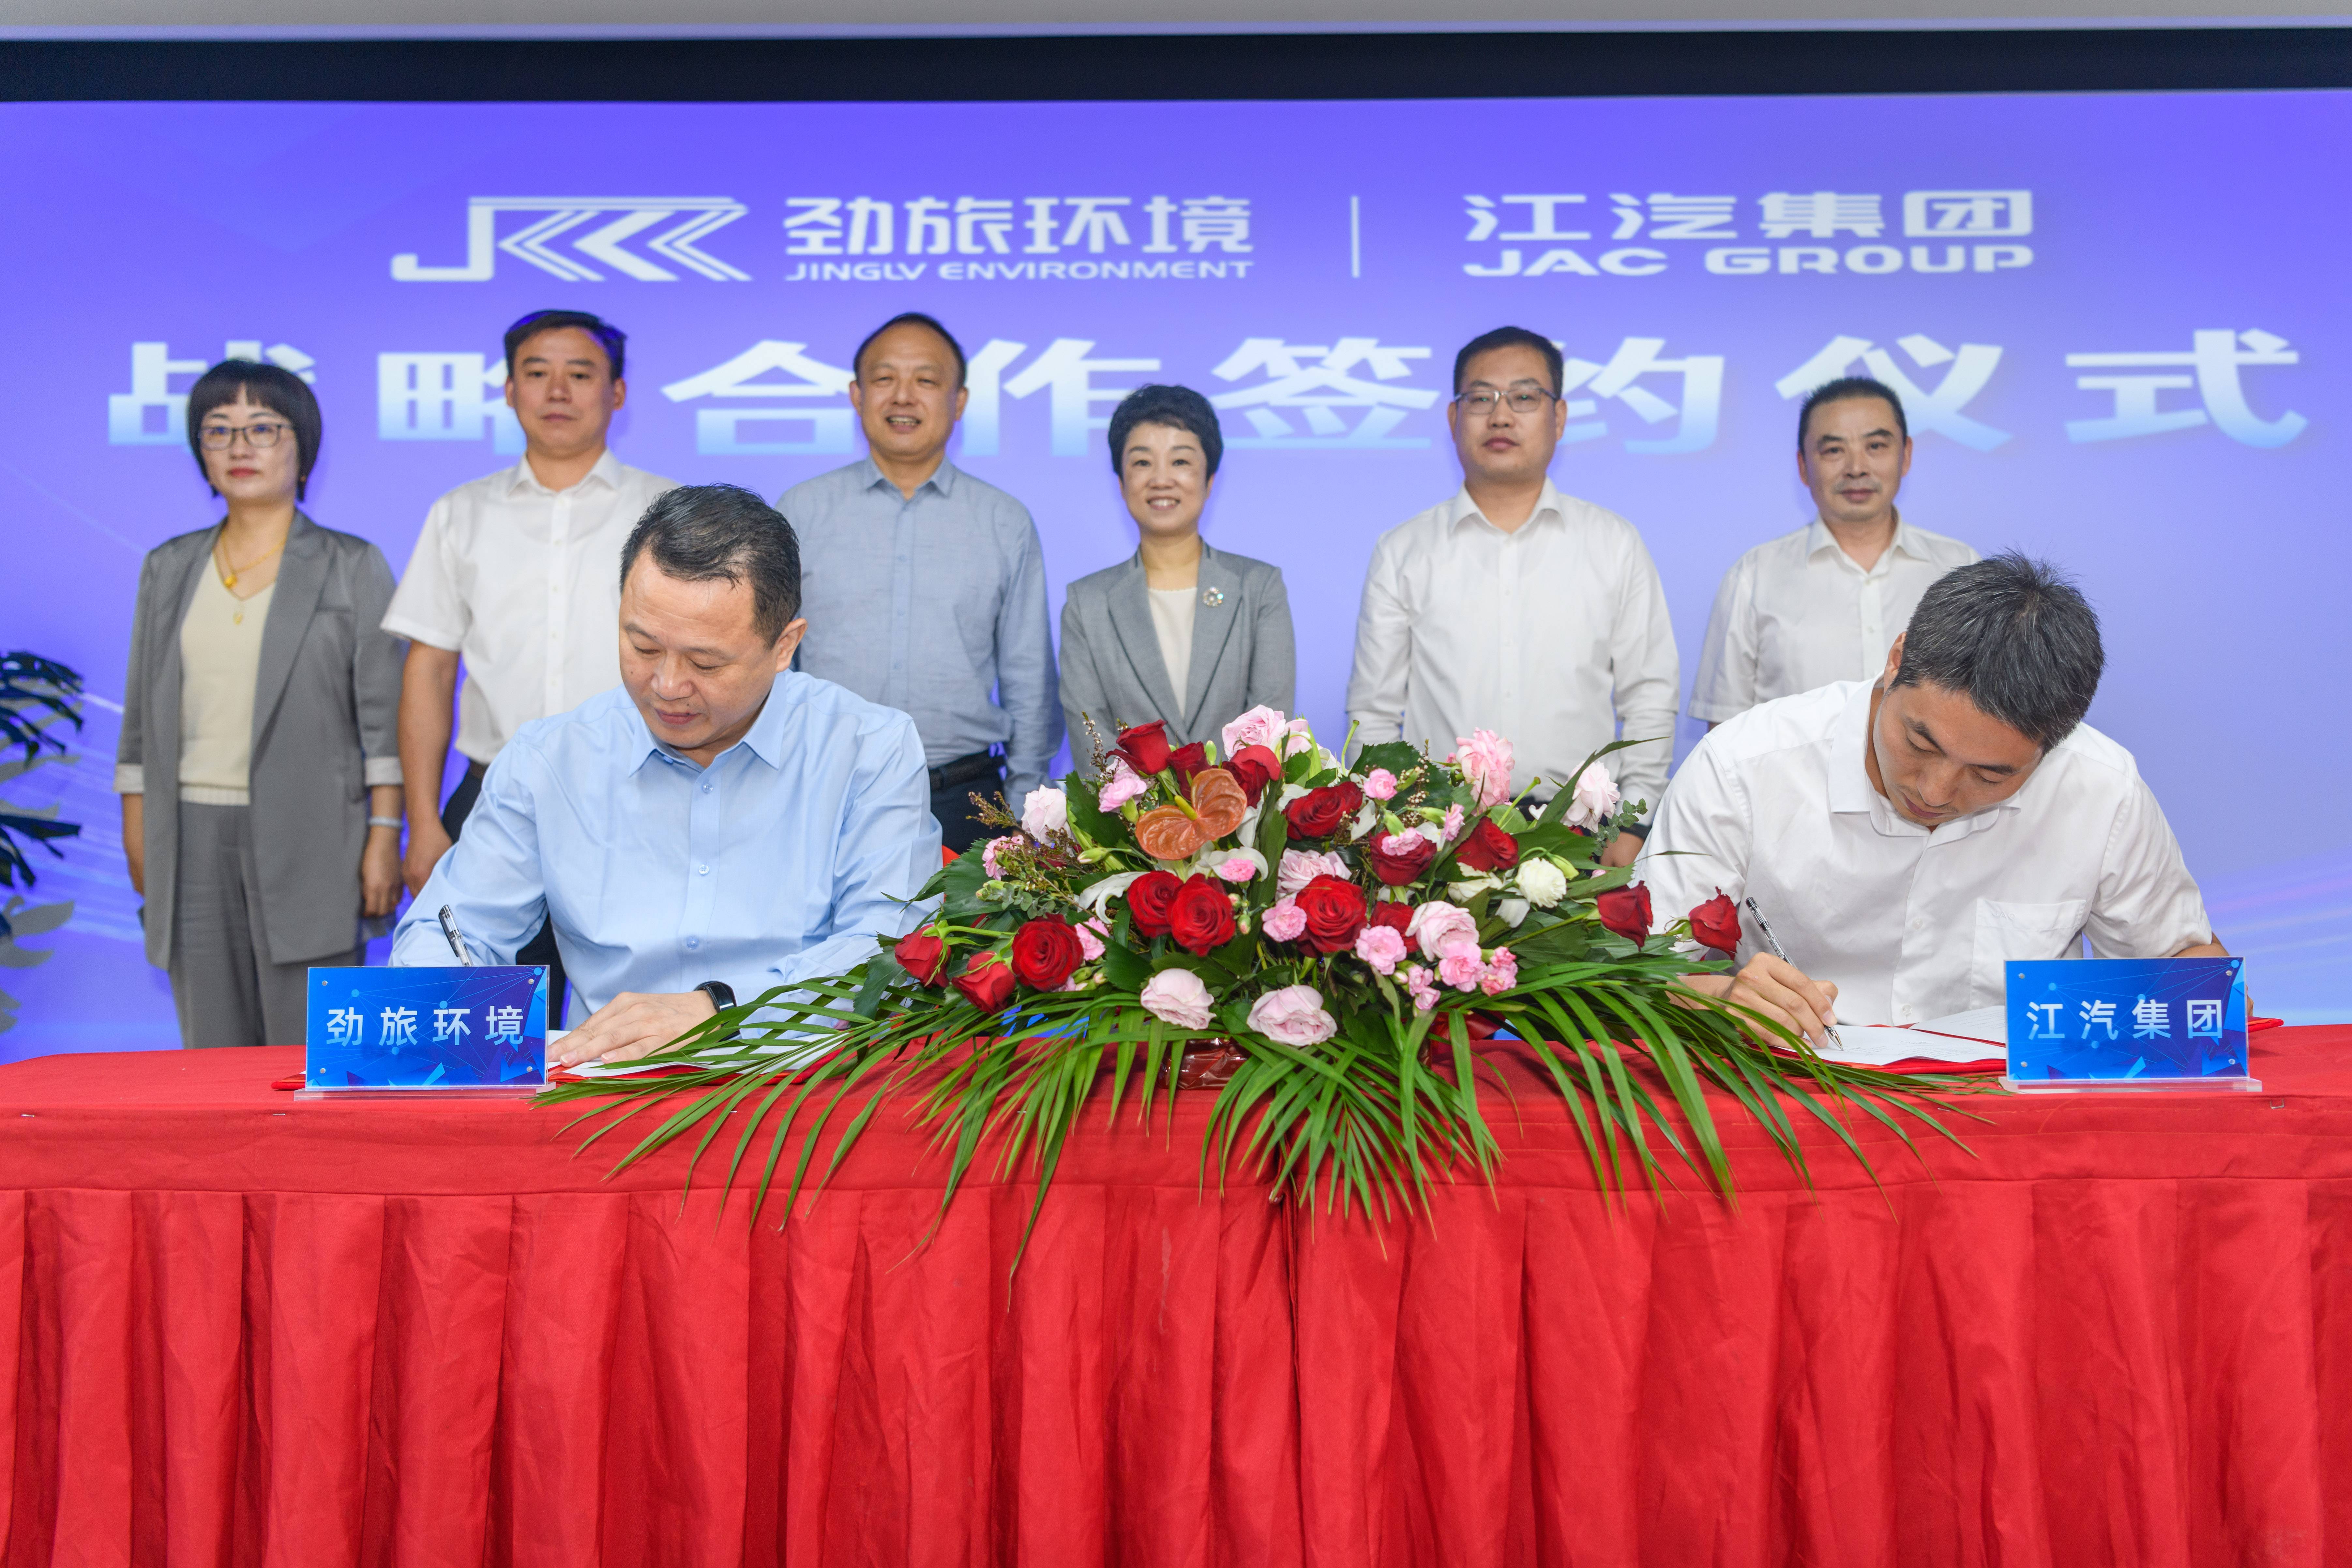 劲旅环境与江汽集团签署战略合作协议